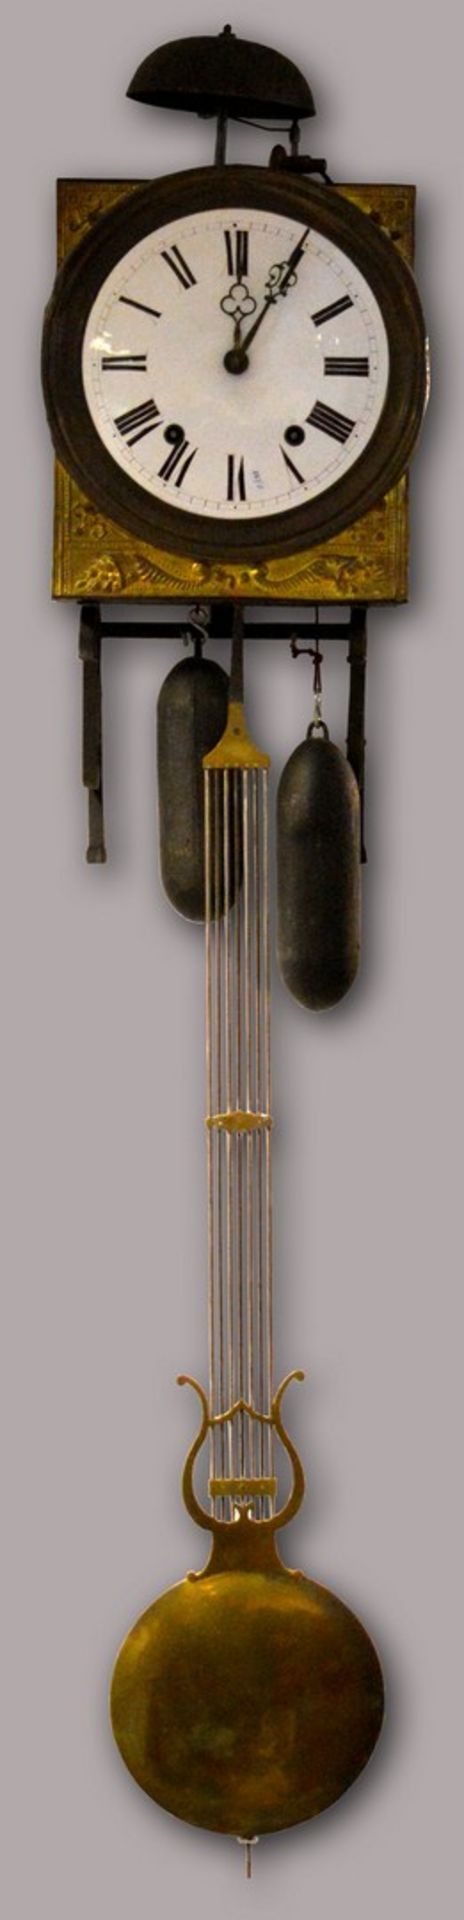 Comtoise Messing, mit halbplastischen Füllhörnern verziert, Emailzifferblatt mit römischen